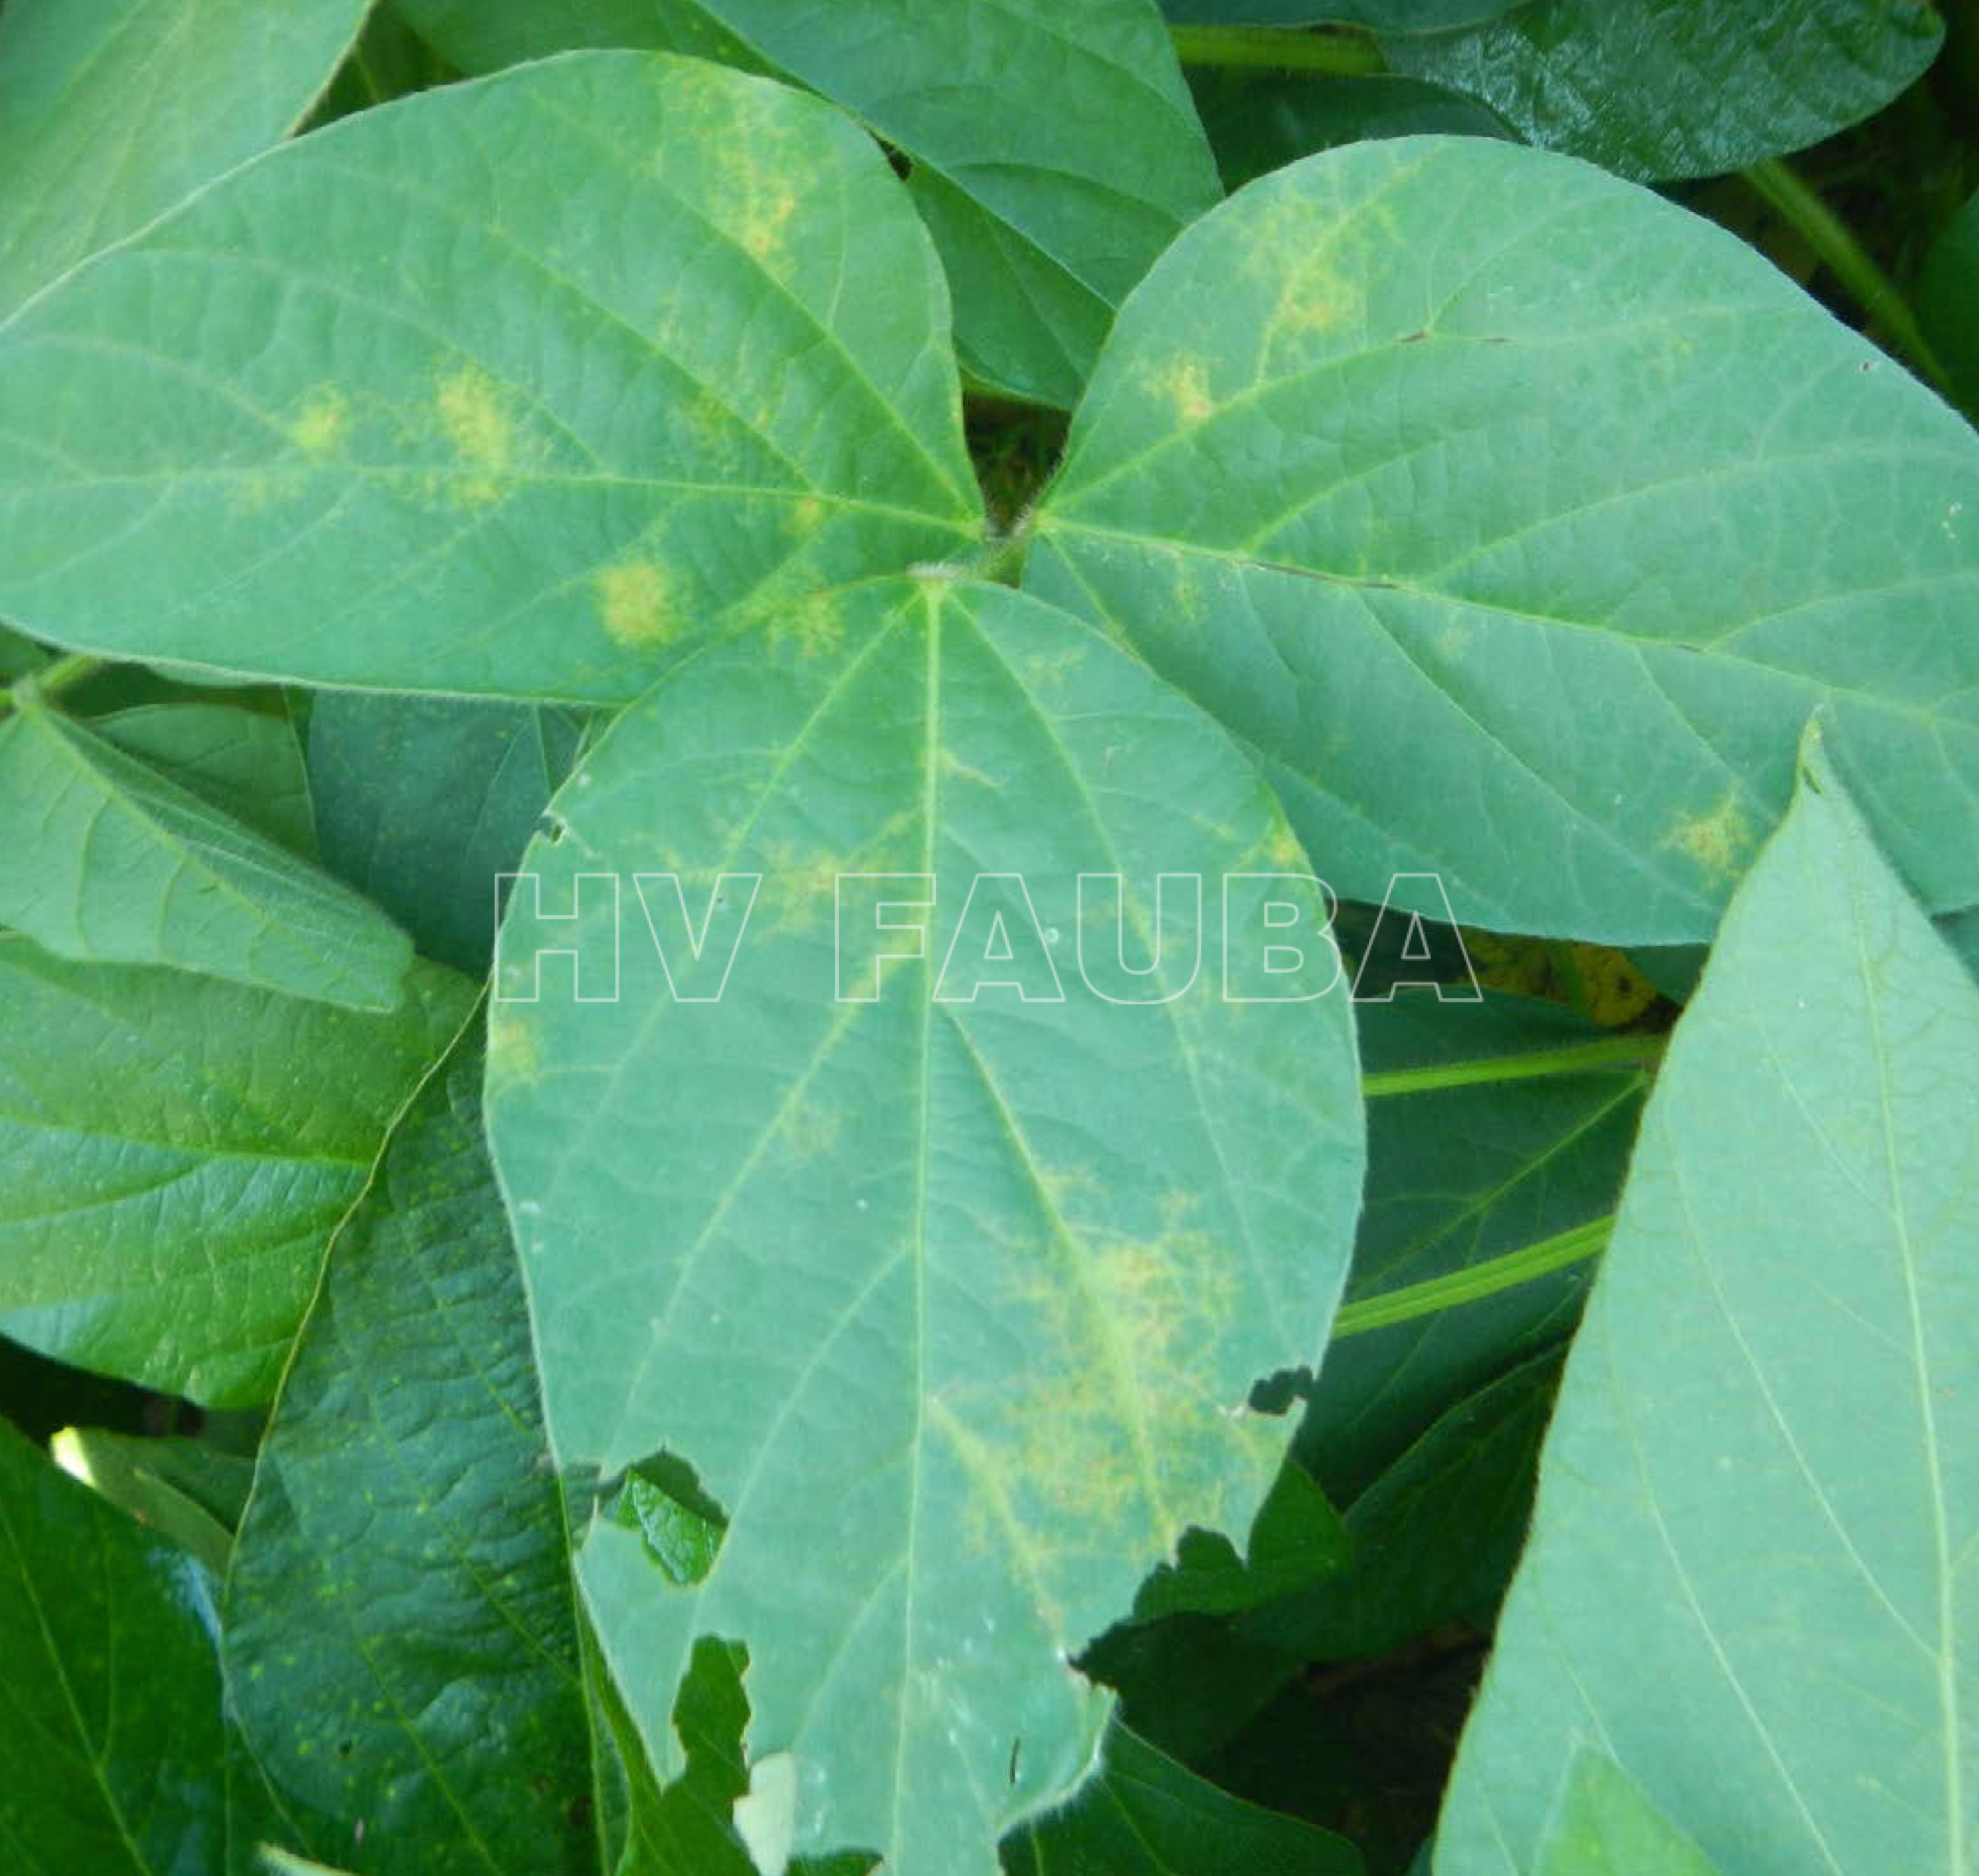 Los primeros síntomas de SVNV incluyen tejido amarillento alrededor de las venas de las hojas. Autor: Bloomingdale et al., 2014 - Crop Protection Network